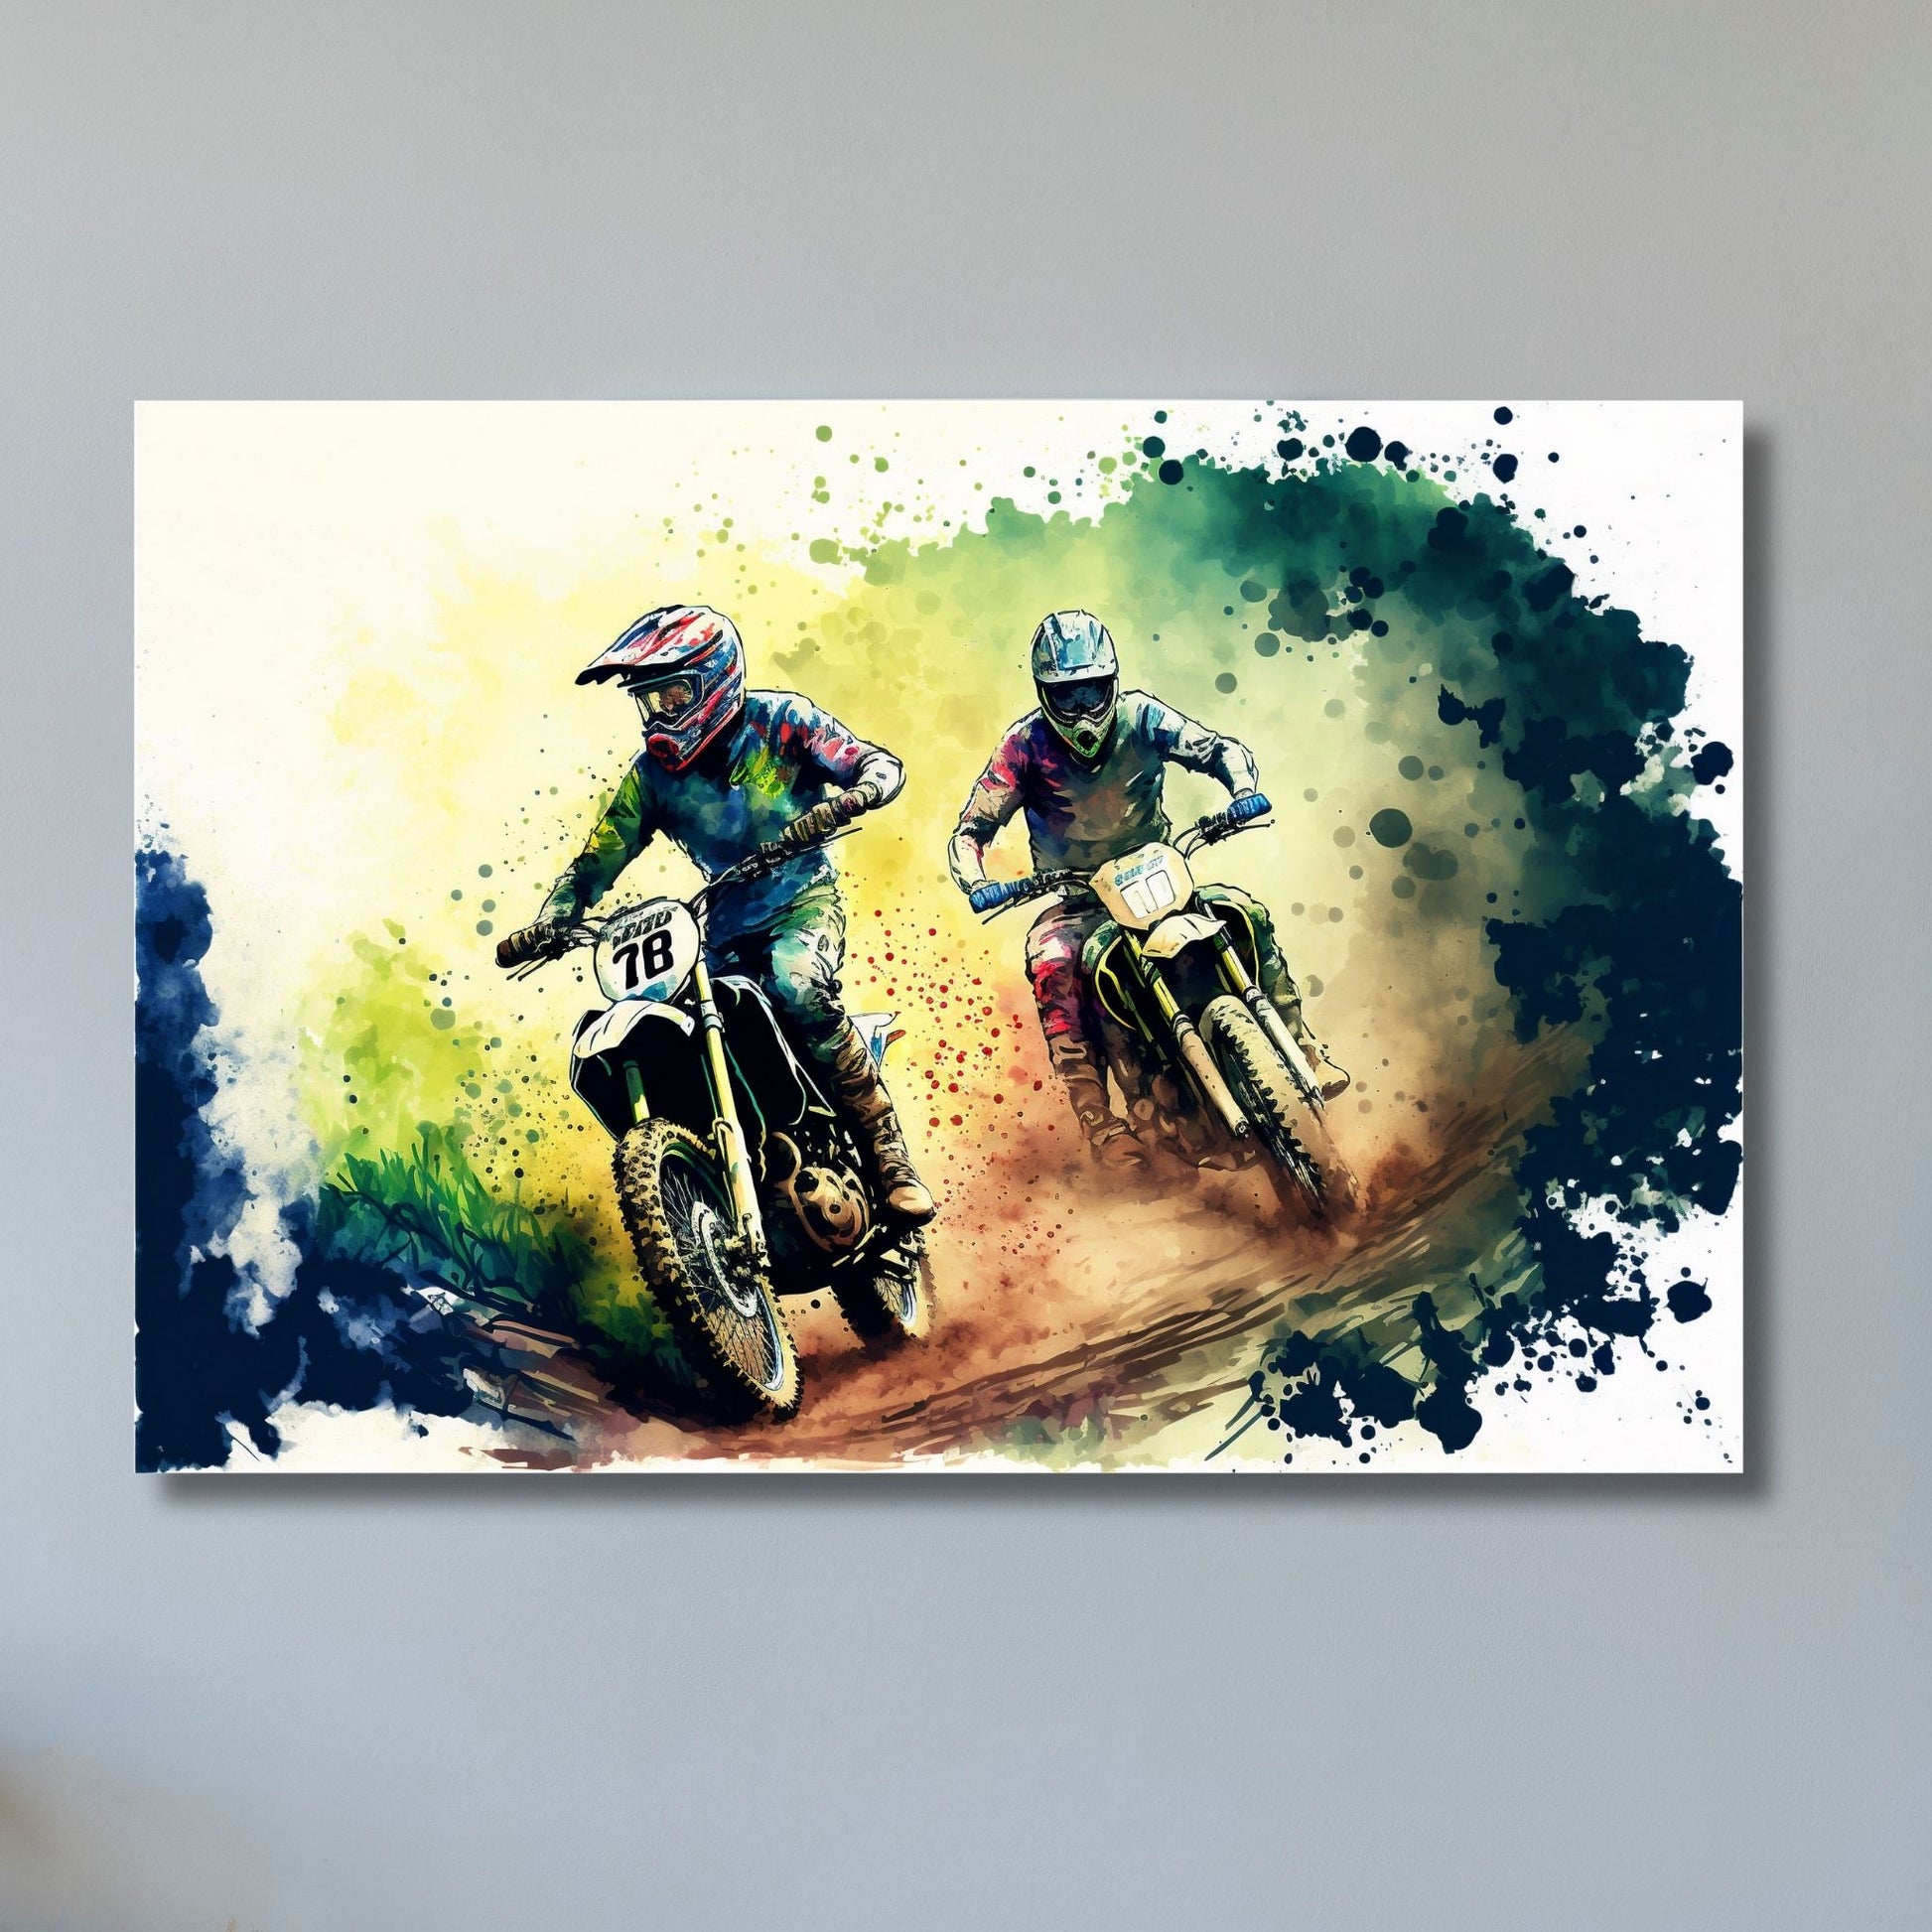 Grafisk abstrakt illustrasjon av to racersyklister som konkurrerer på sine motorsykler. Et spennende og dynamisk bilde som passer perfekt for alle motorsportentusiaster. Illustrasjonsbilde viser motivet på lerret